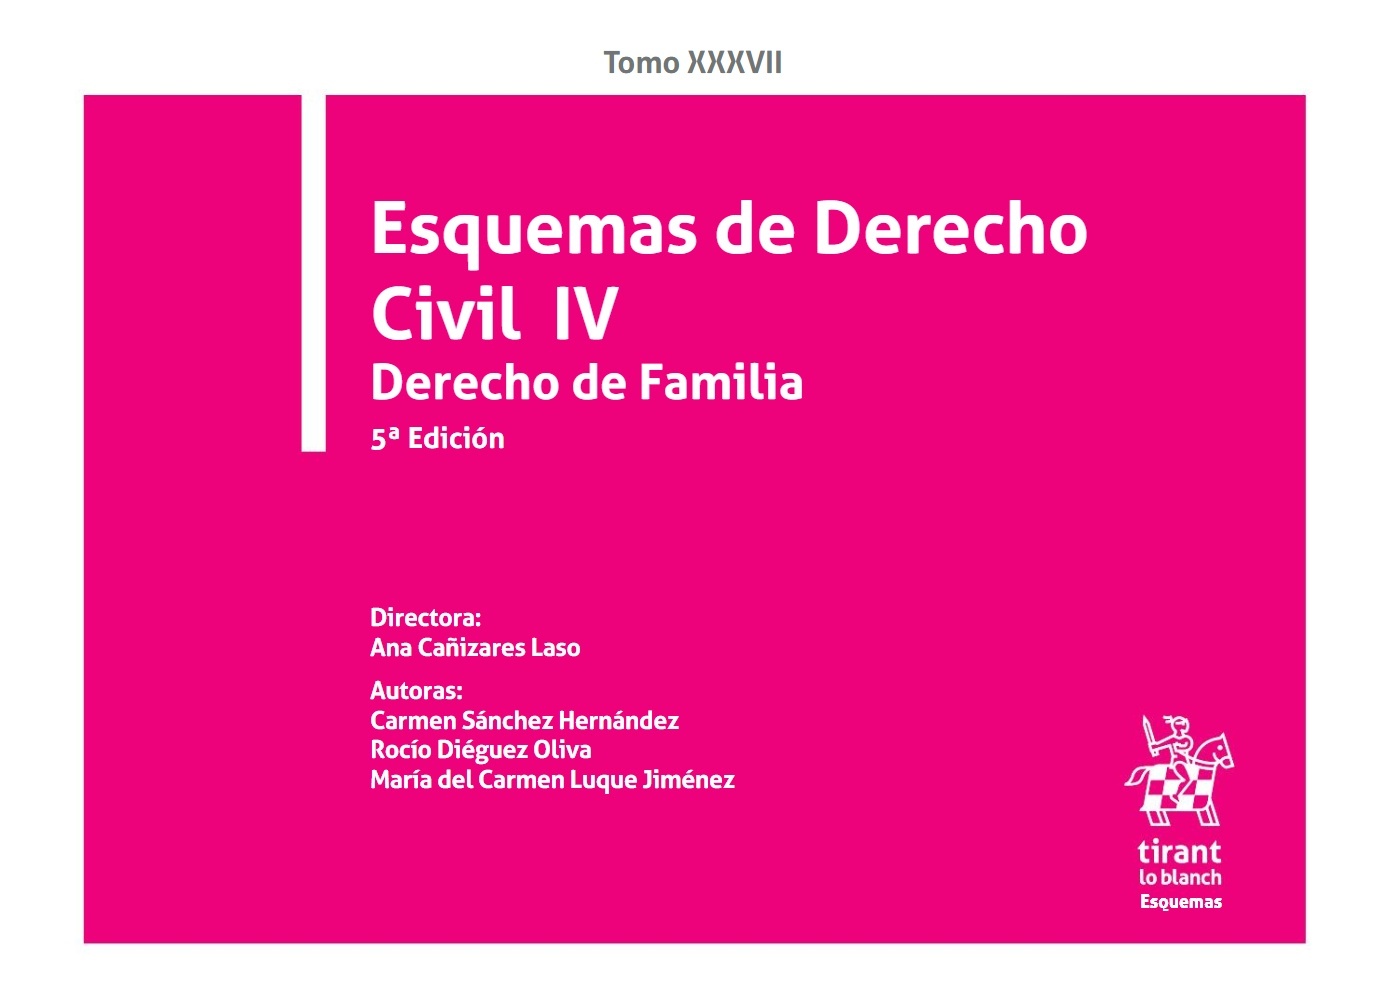 Esquemas de Derecho Civil IV. Derecho de familia Tomo XXXVII